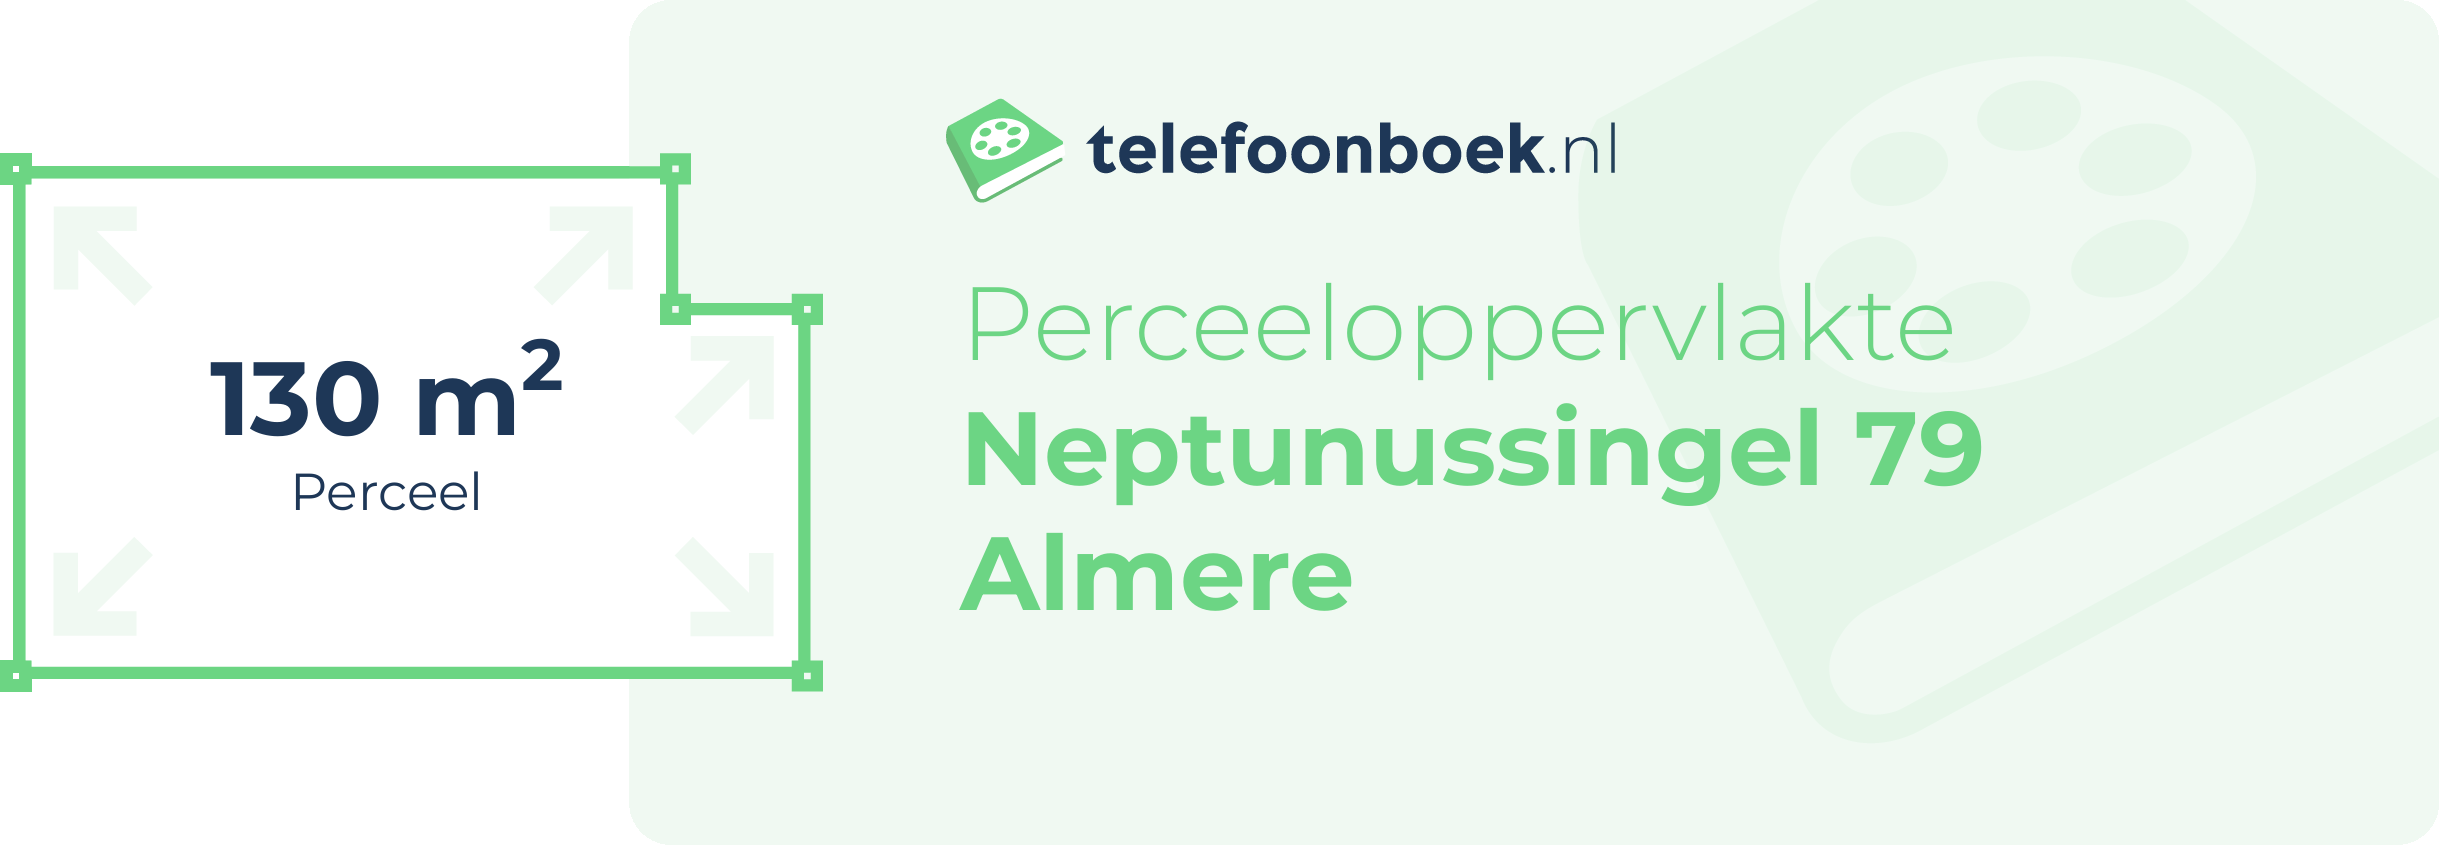 Perceeloppervlakte Neptunussingel 79 Almere